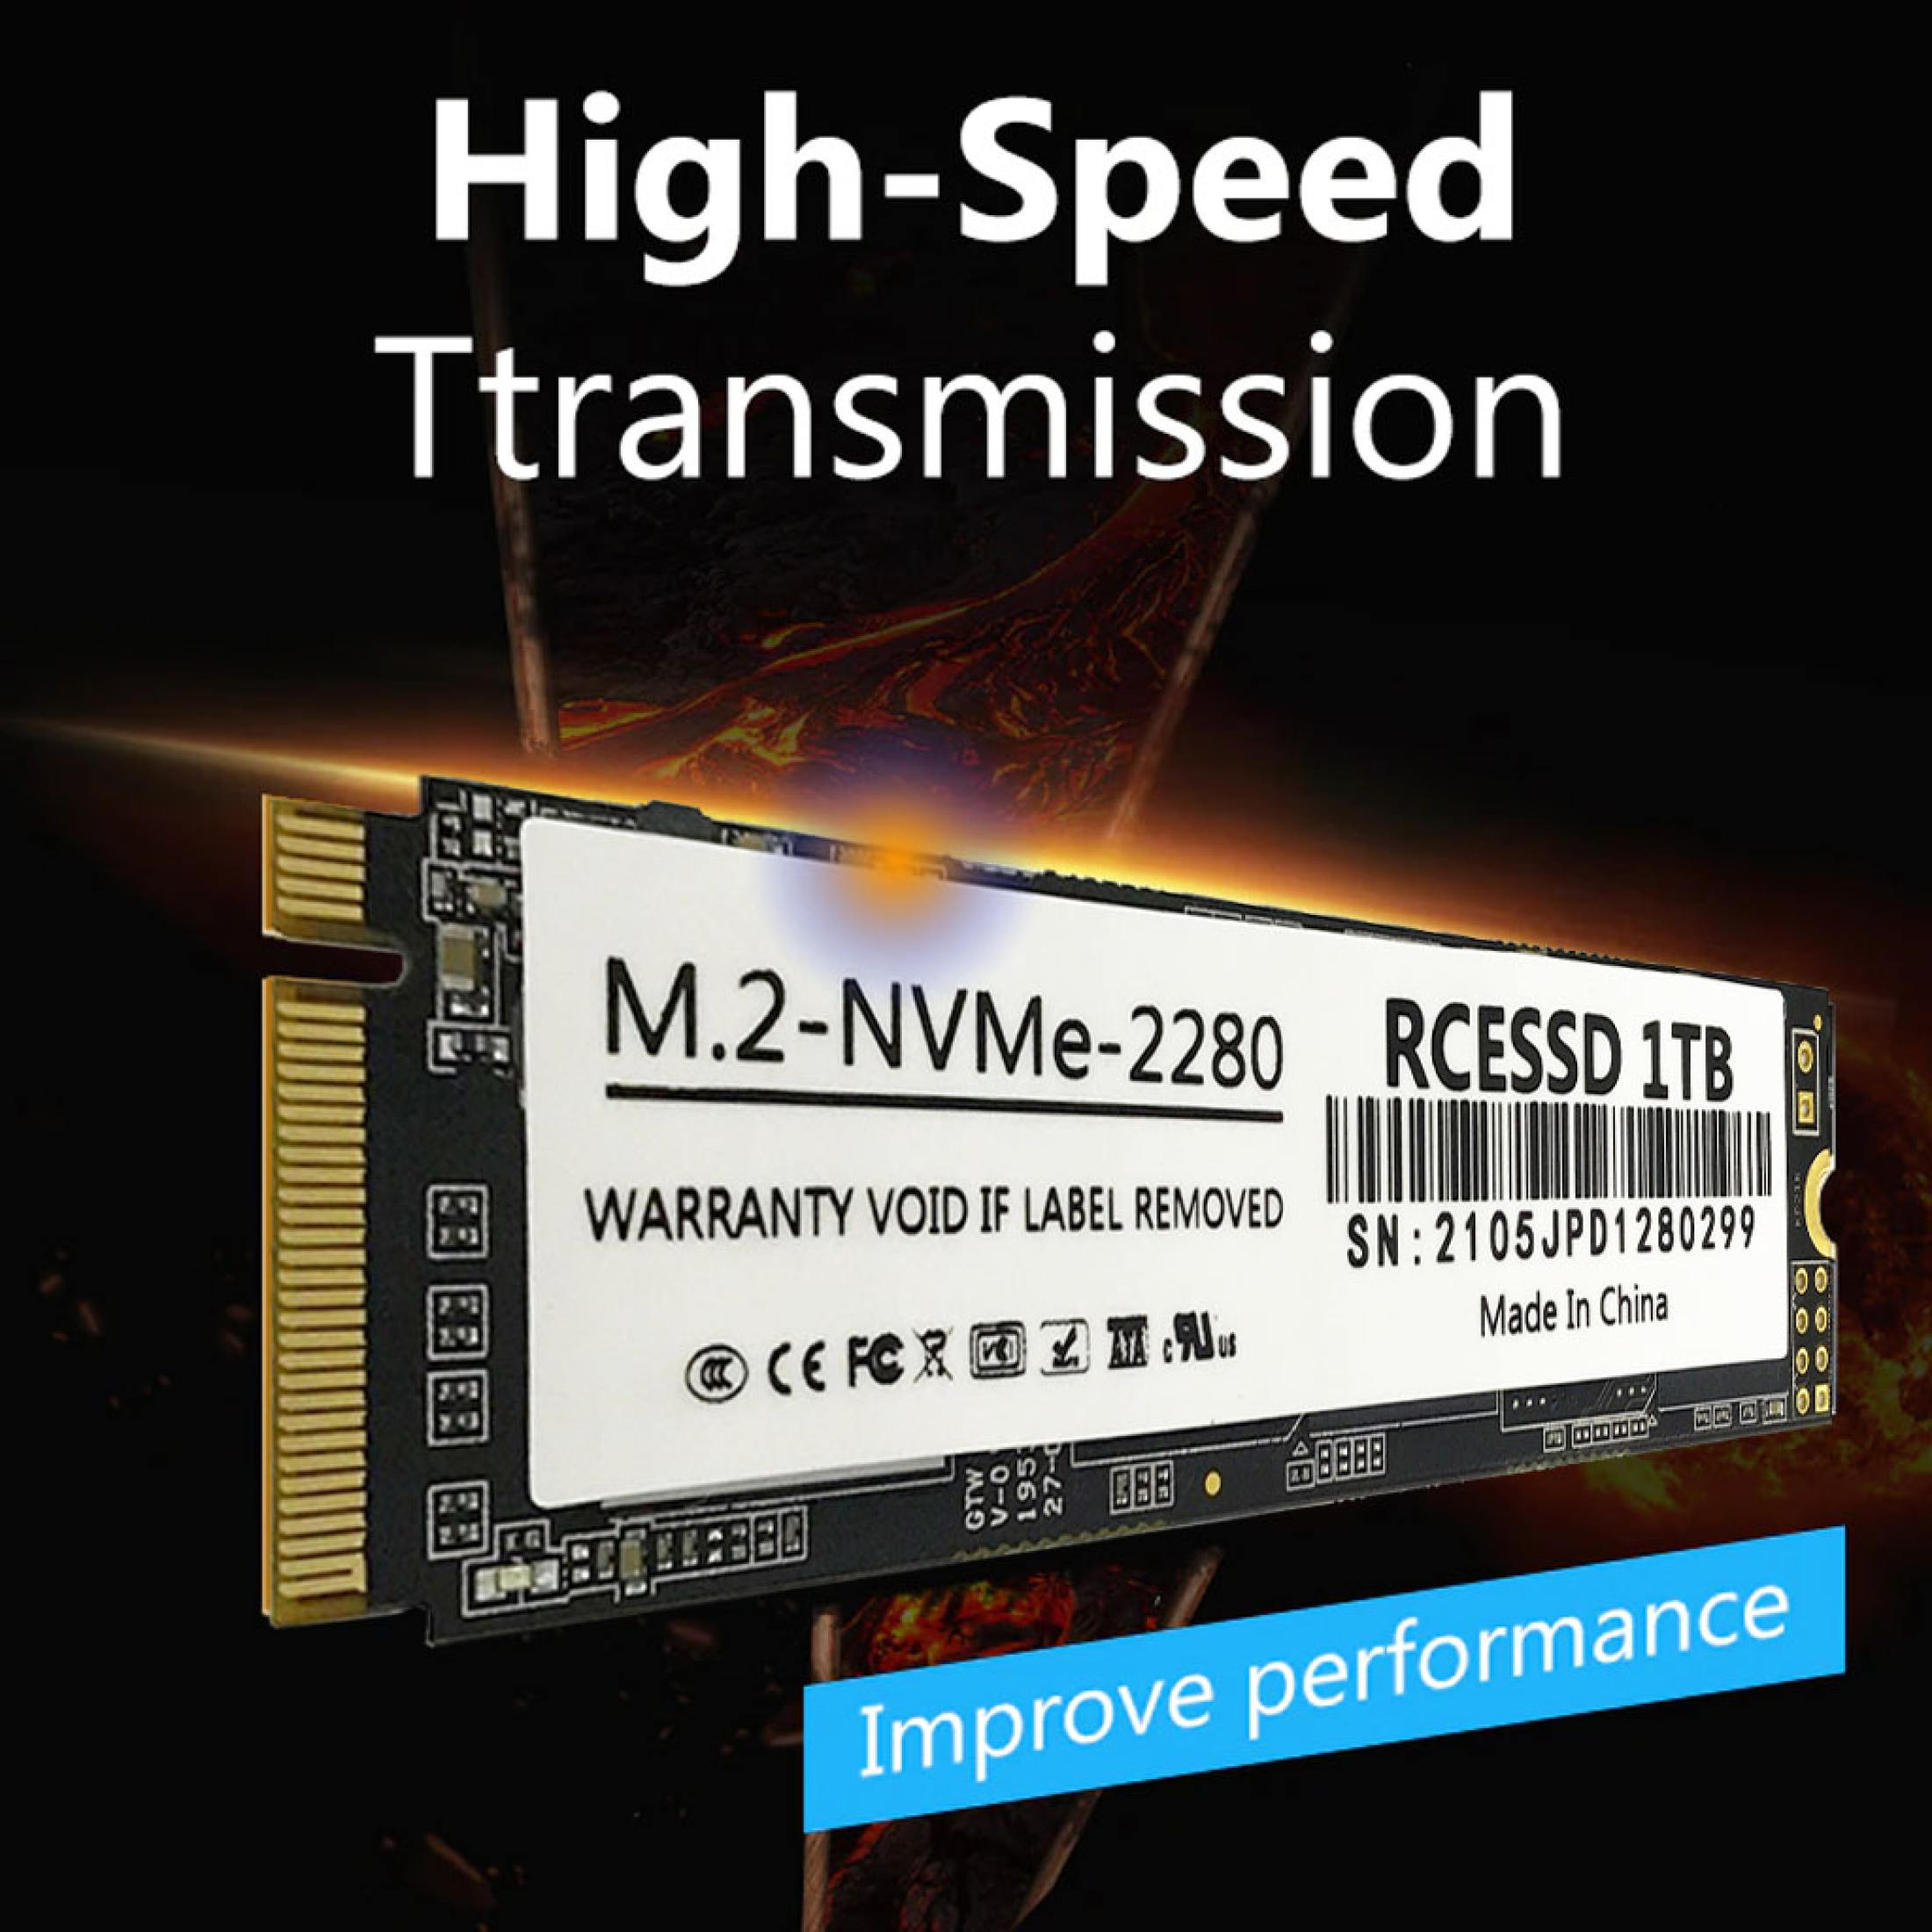 Ổ Cứng SSD M.2 -NVMe 2280 Rcessd 1TB Gắn Trong - Bảo Hành 3 Năm